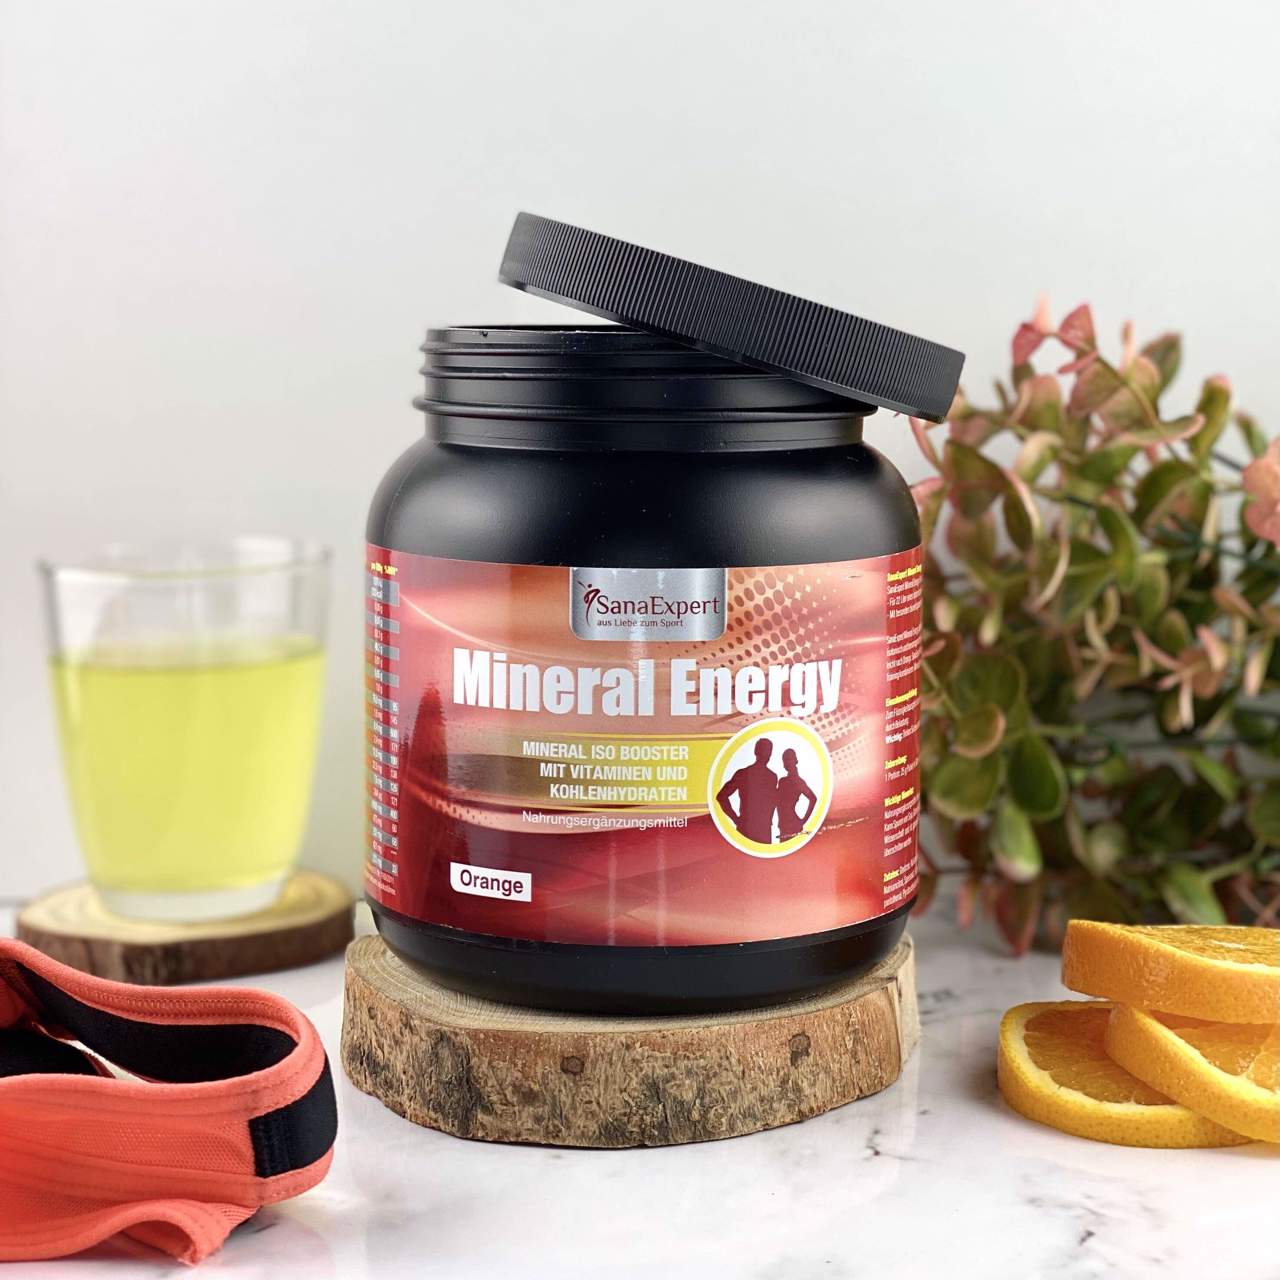 Nahaufnahme einer Mineral Energy Dose auf einem Holzstück, neben einem Fitnessband und Orangenscheiben, auf hellem Hintergrund.